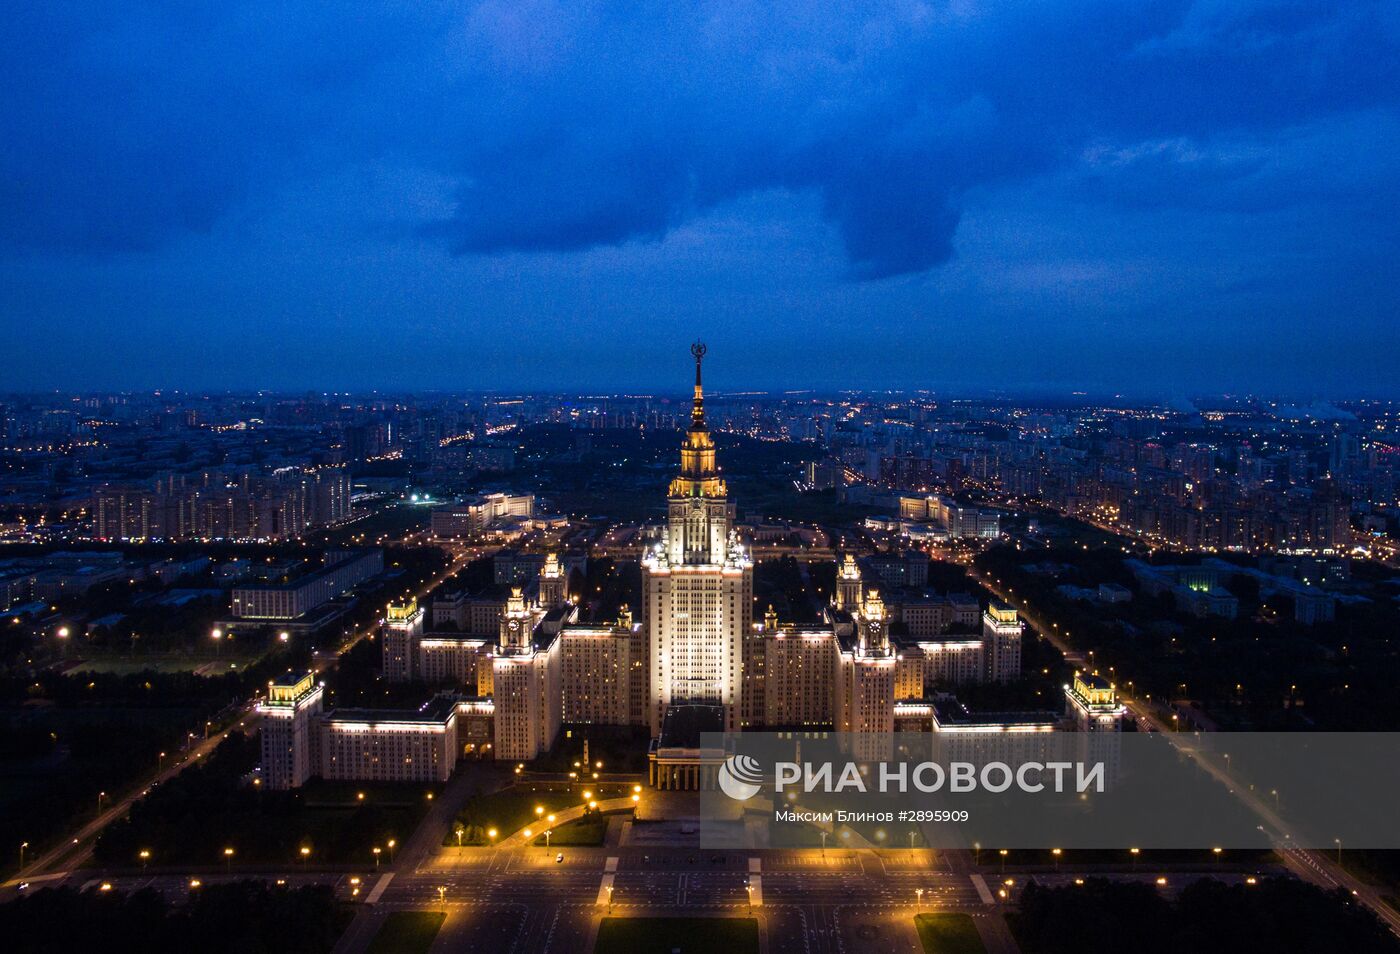 Виды Москвы с высоты птичьего полета